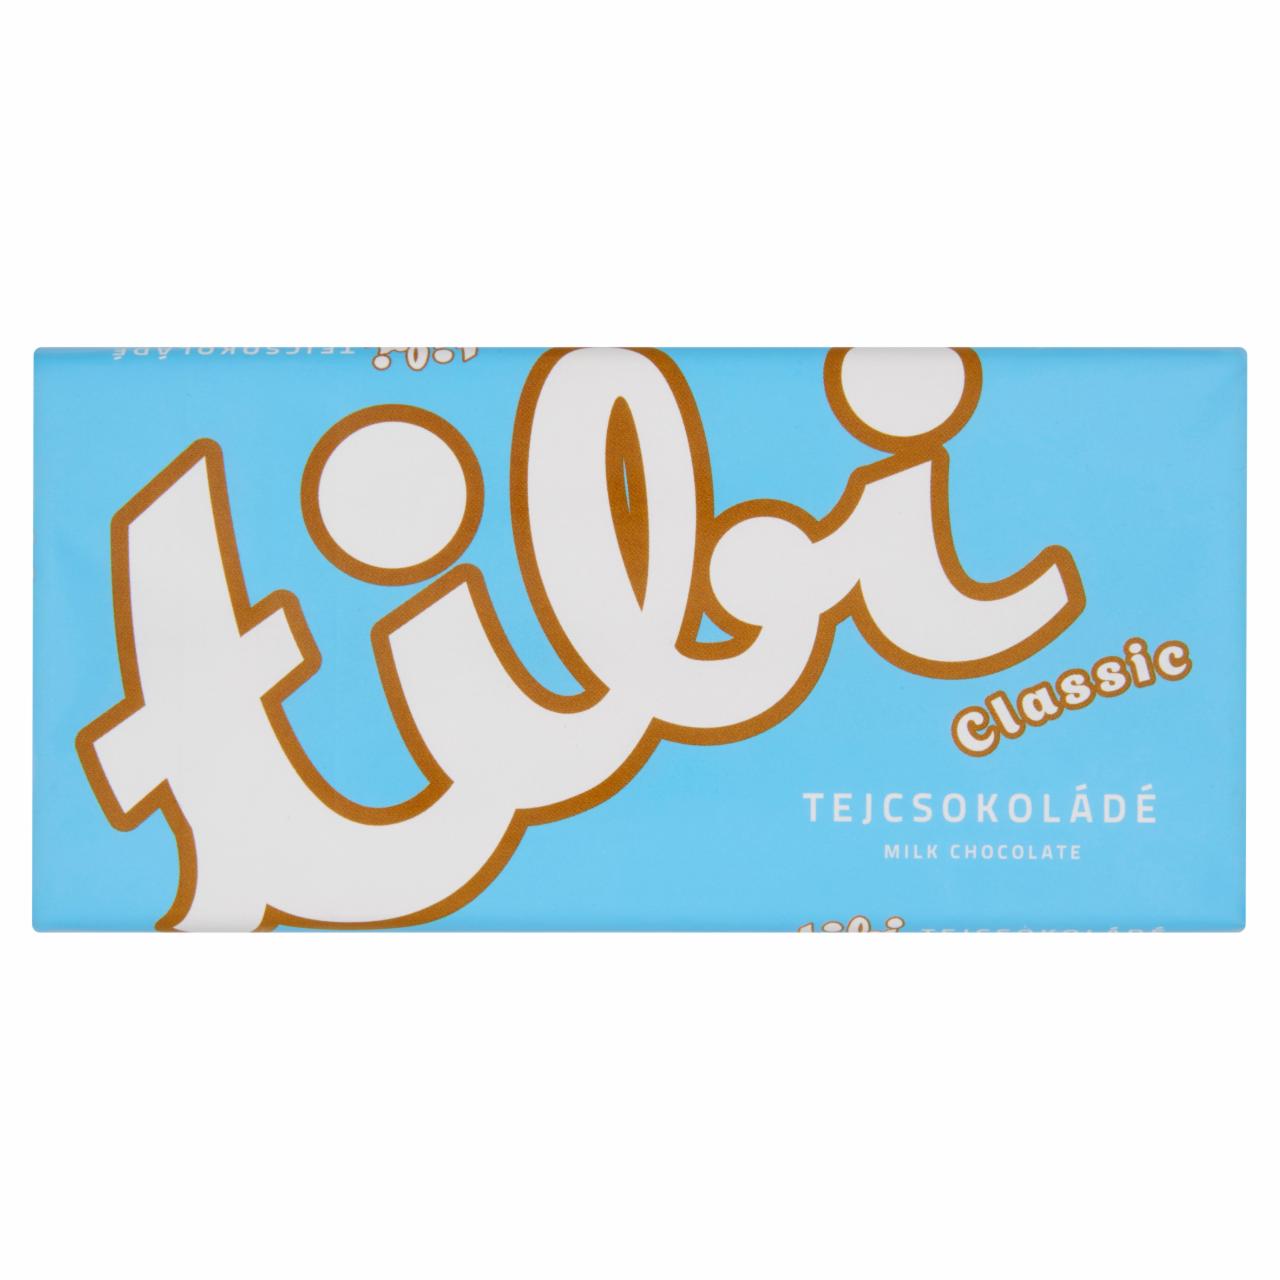 Képek - Tibi Classic tejcsokoládé 90 g